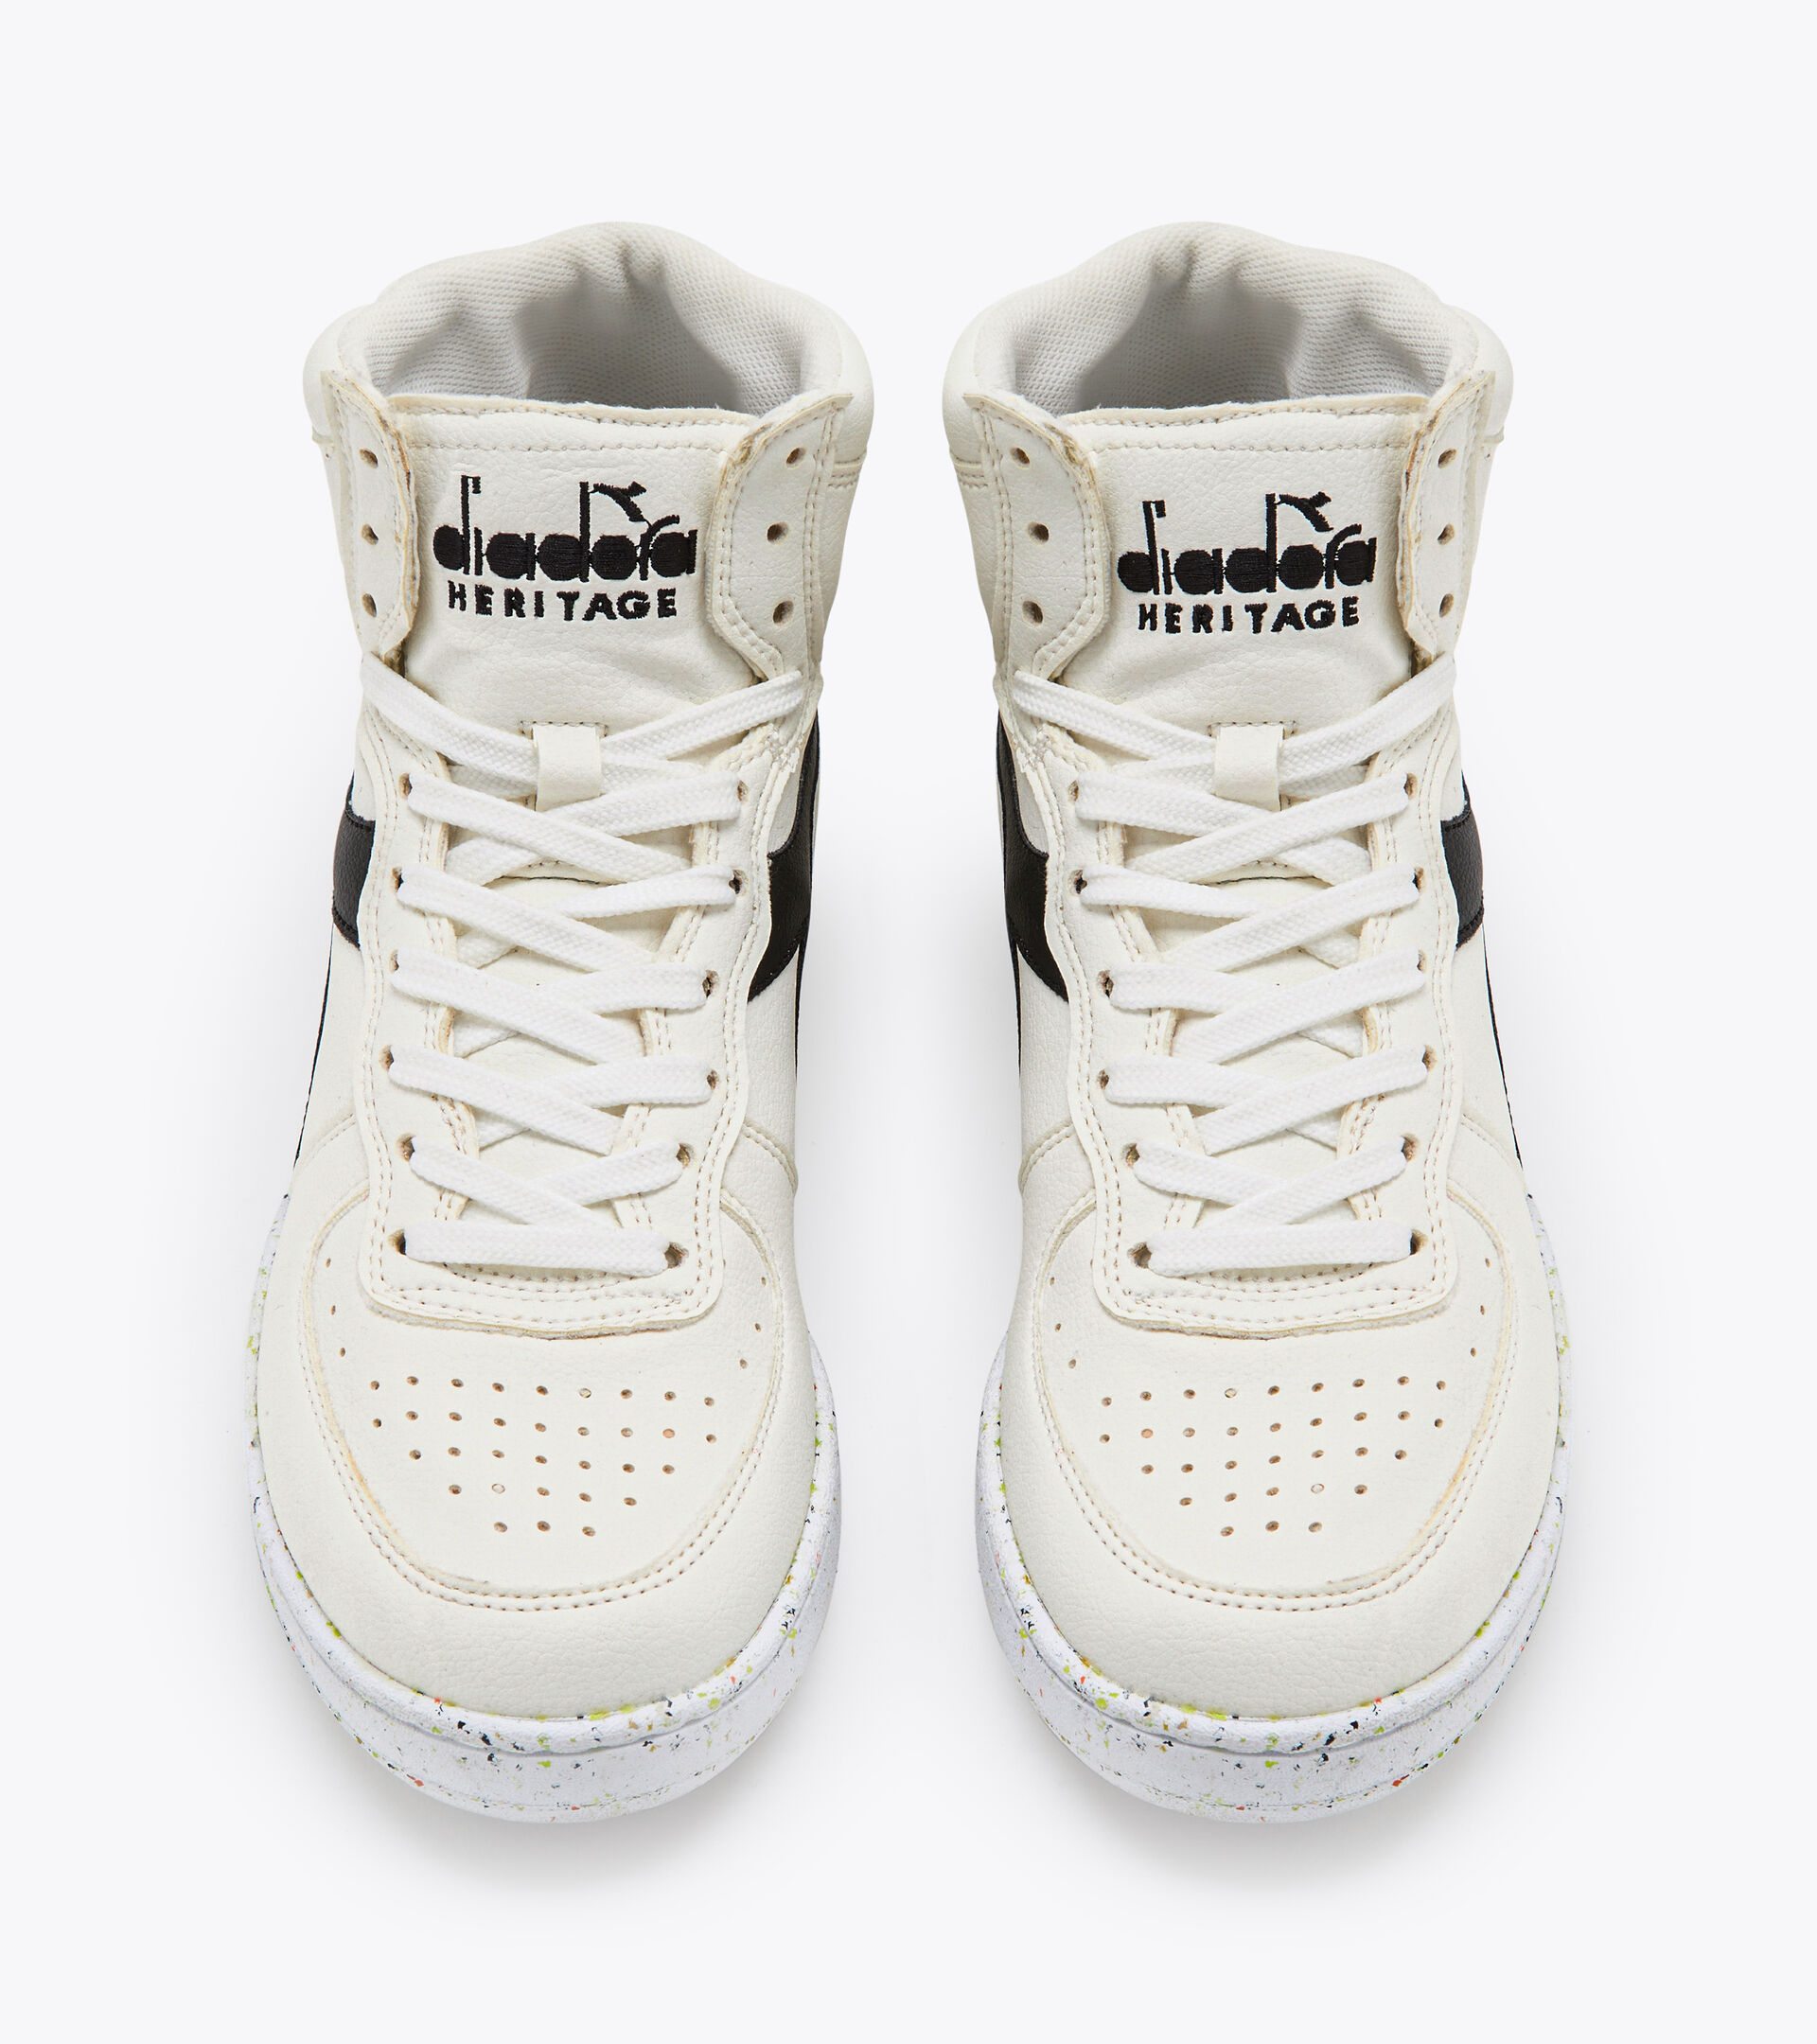 Heritage shoes - Unisex MI BASKET 2030 WHITE/BLACK - Diadora